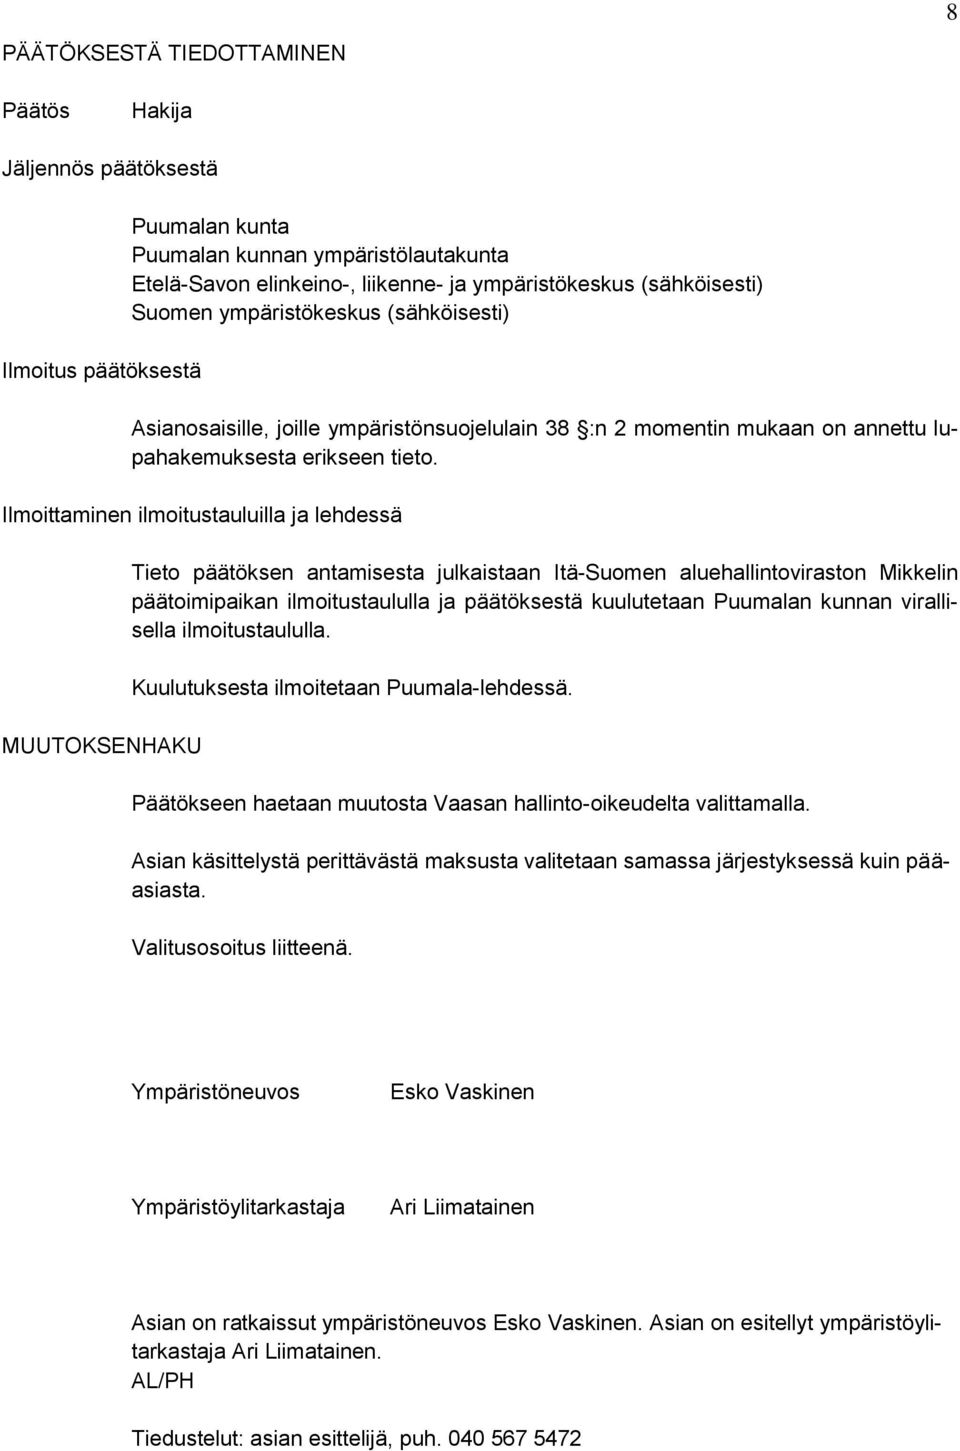 Ilmoittaminen ilmoitustauluilla ja lehdessä MUUTOKSENHAKU Tieto päätöksen antamisesta julkaistaan Itä-Suomen aluehallintoviraston Mikkelin päätoimipaikan ilmoitustaululla ja päätöksestä kuulutetaan